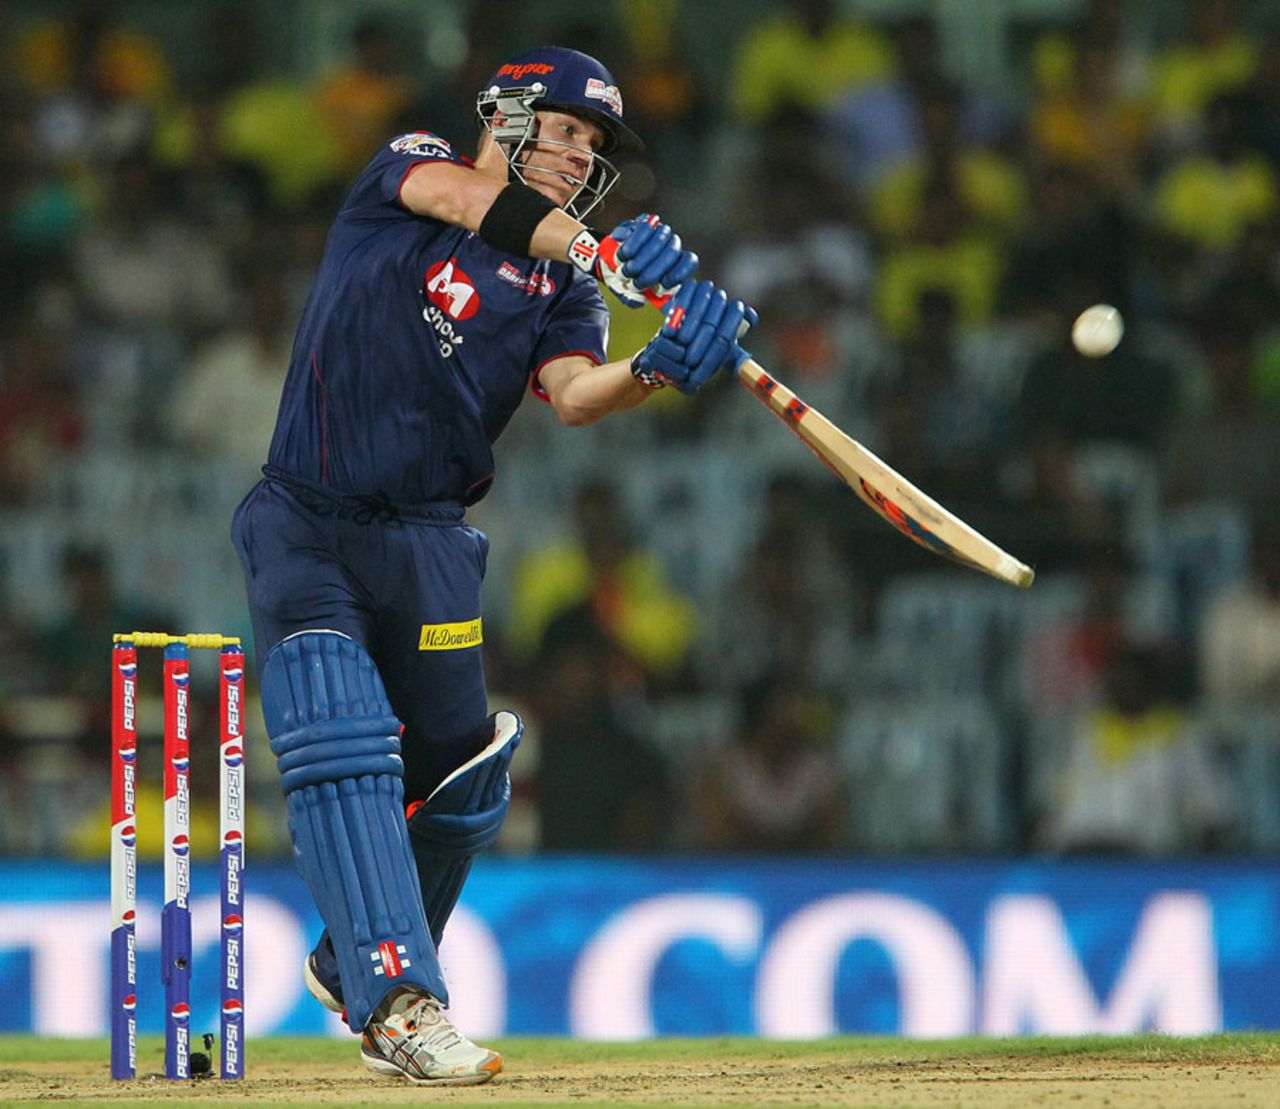 David Warner plays a lofted shot during his innings, Chennai Super Kings v Delhi Daredevils, IPL 2013, Chennai, May 14, 2013